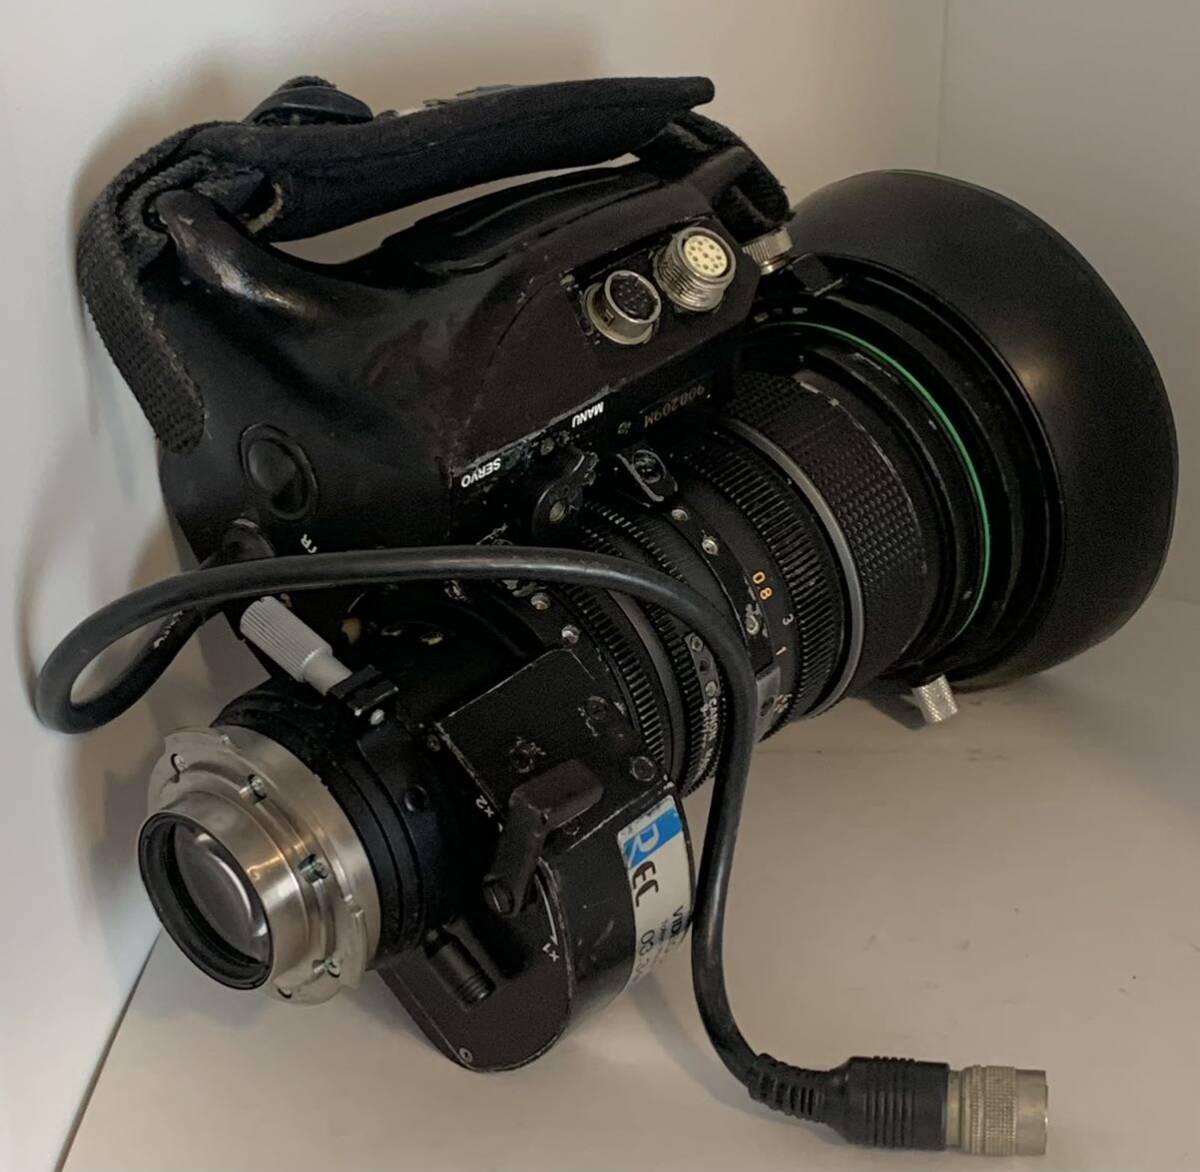 ☆... редко встречающийся ☆ Canon  Canon MACRO TV ZOOM LENZ J13×9B4 IRSⅡ-A SX12 CCD 13X 9-117mm F1.6  работа  для  видео   оптика  